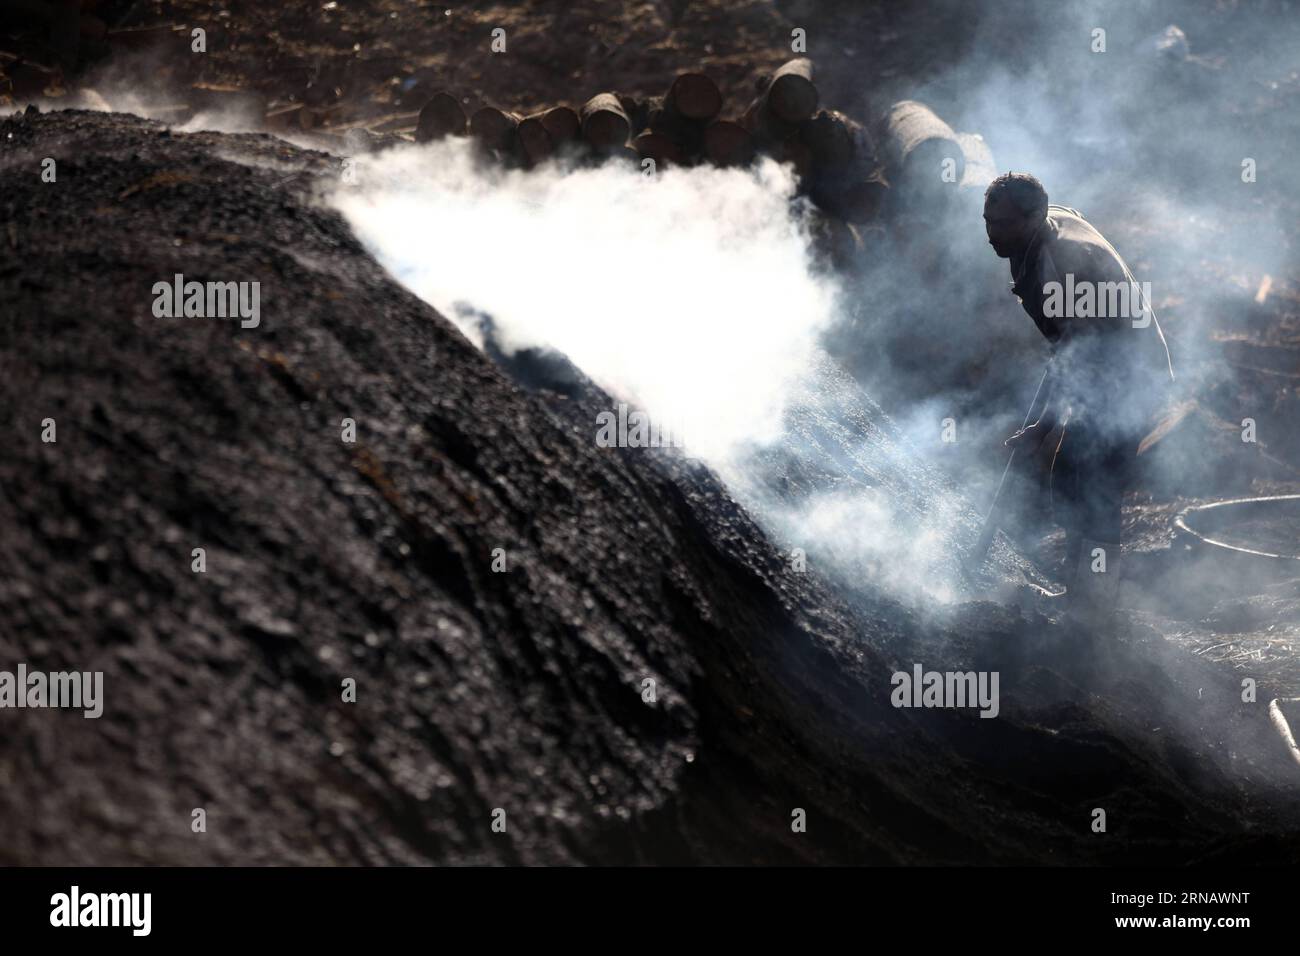 Un ouvrier égyptien du charbon travaille dans une usine de charbon de bois à Sharqia, en Égypte, le 7 février 2016. Il y avait environ 300 usines de charbon en Egypte avec plus de 5 000 travailleurs employés. Mais le gouvernement égyptien en ferme maintenant beaucoup pour réduire la pollution environnementale causée par les unités industrielles de charbon de bois. )(zhf) EGYPTE-SHARQIA-PRODUCTION DE CHARBON AhmedxGomaa PUBLICATIONxNOTxINxCHN à l'ouvrier égyptien du charbon travaille DANS une usine de charbon à Sharqia Egypte LE 7 2016 février il y avait environ 300 usines de charbon en Egypte avec plus de 5 000 travailleurs employés, mais le gouvernement égyptien EST N. Banque D'Images